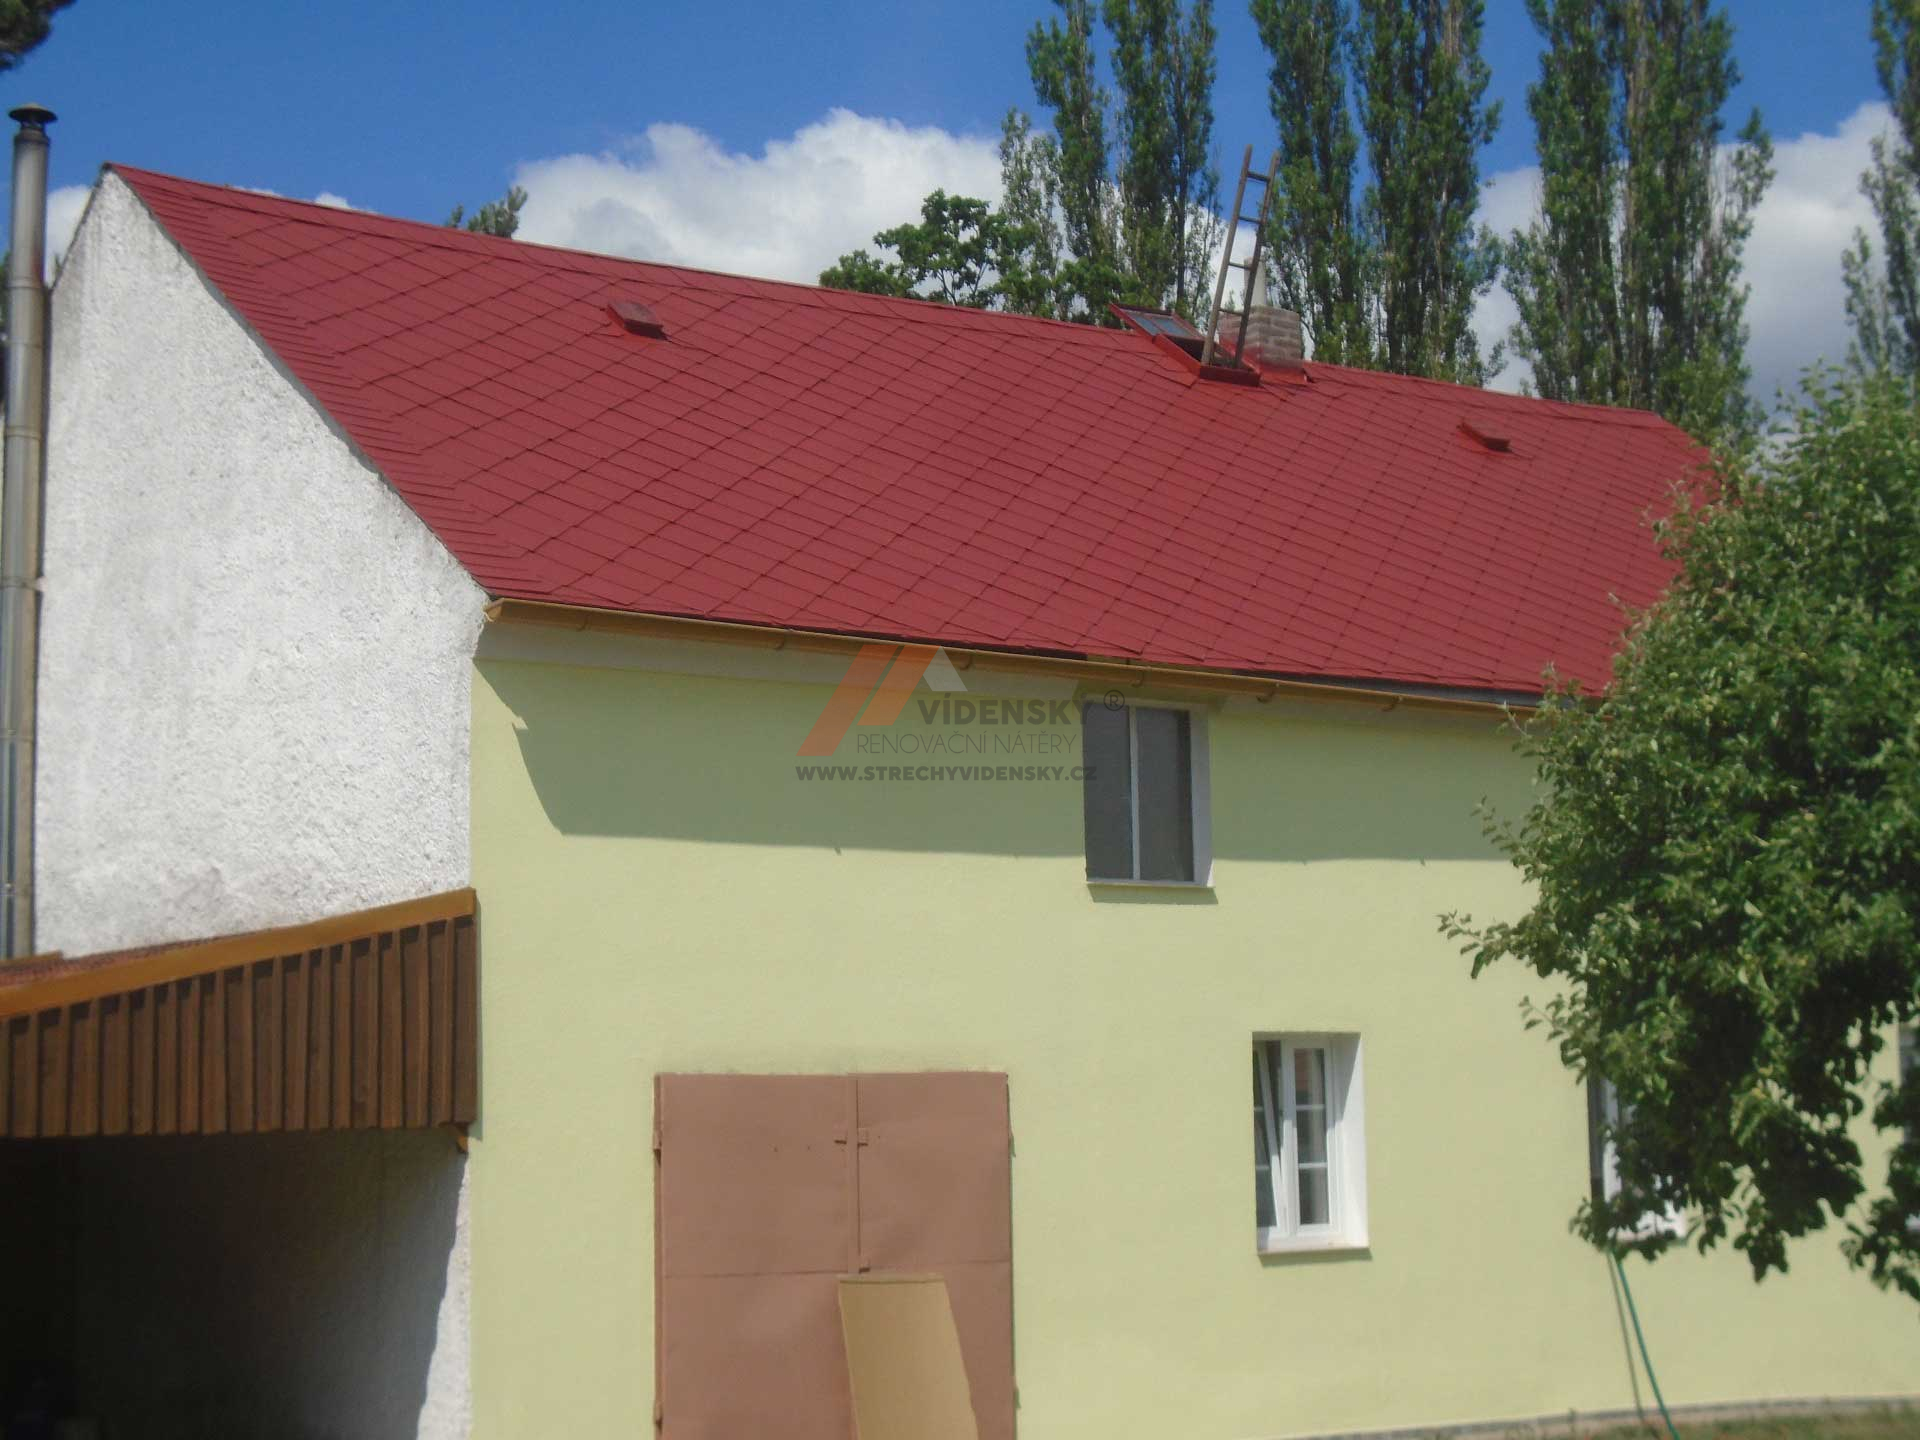 Vídenský | Renovační nátěr eternitové střechy 05 - Červený odstín